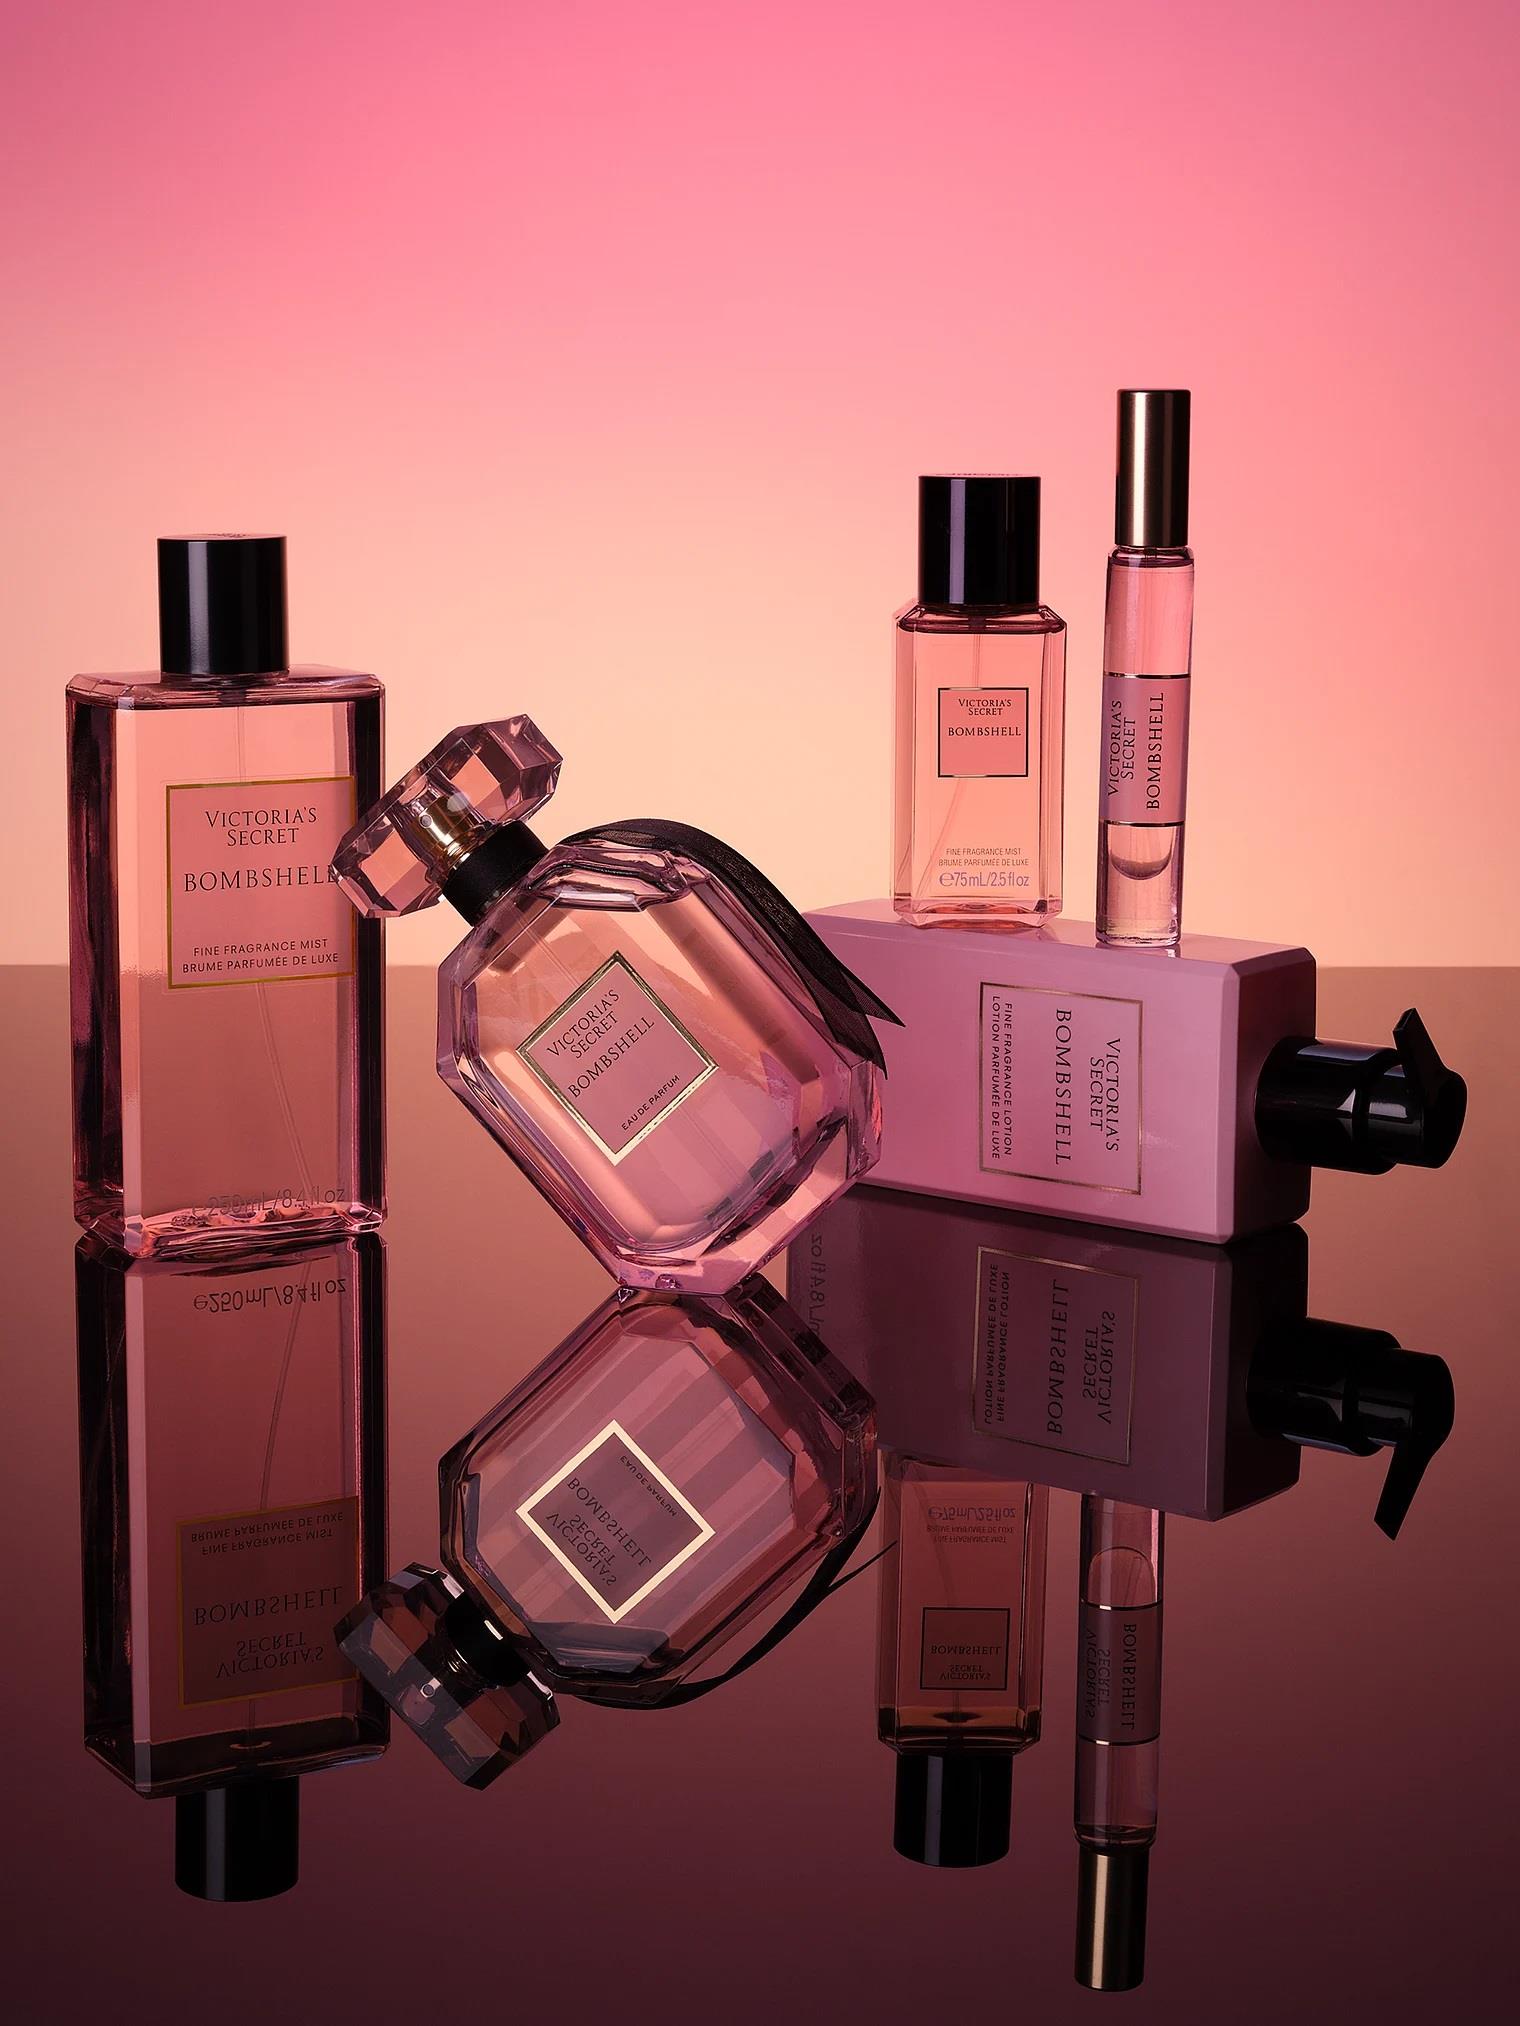 Bombshell Eau de Parfum | Victoria's Secret